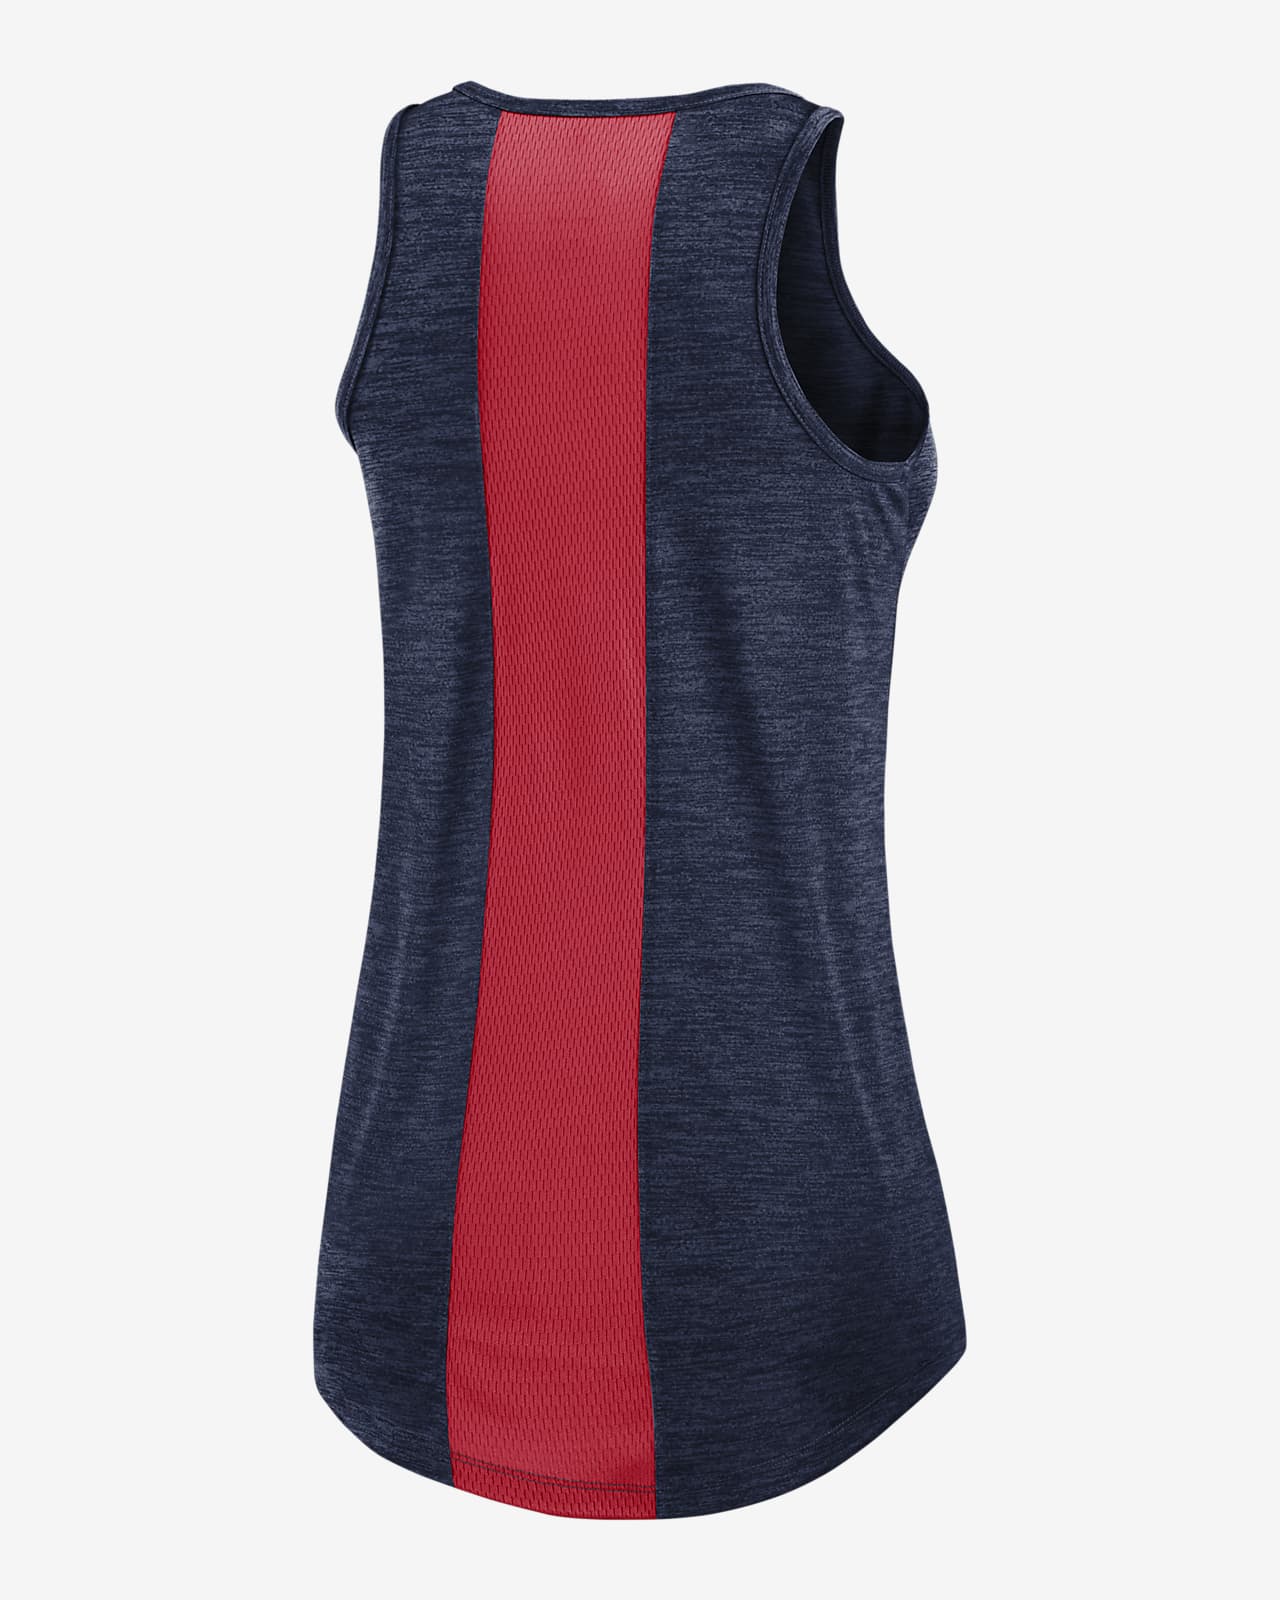 Camiseta de cuello alto para mujer Nike Dri-FIT Right Mix (MLB Boston Red Sox). Nike.com